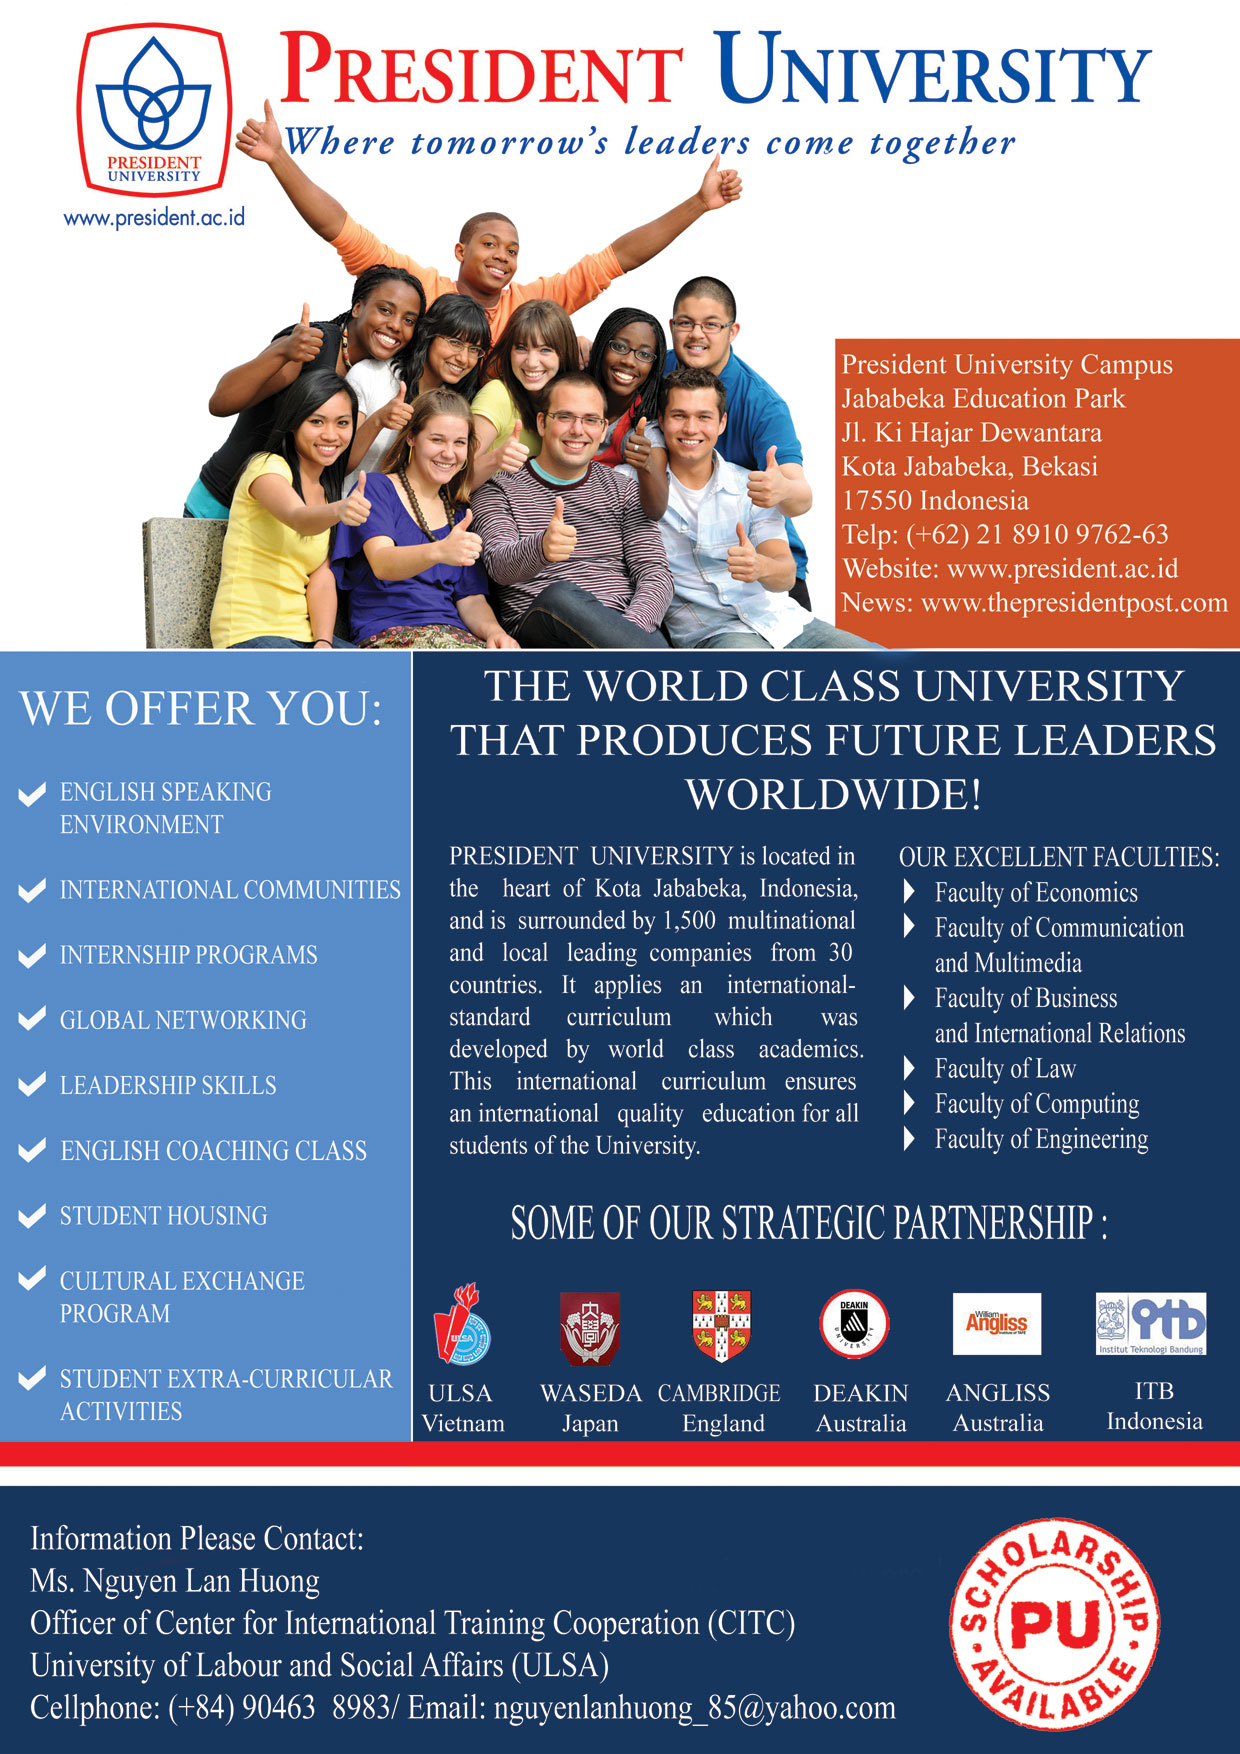 Thông báo tuyển sinh chương trình học bổng 100% học đại học tại Trường Đại học President, Indonesia năm 2013